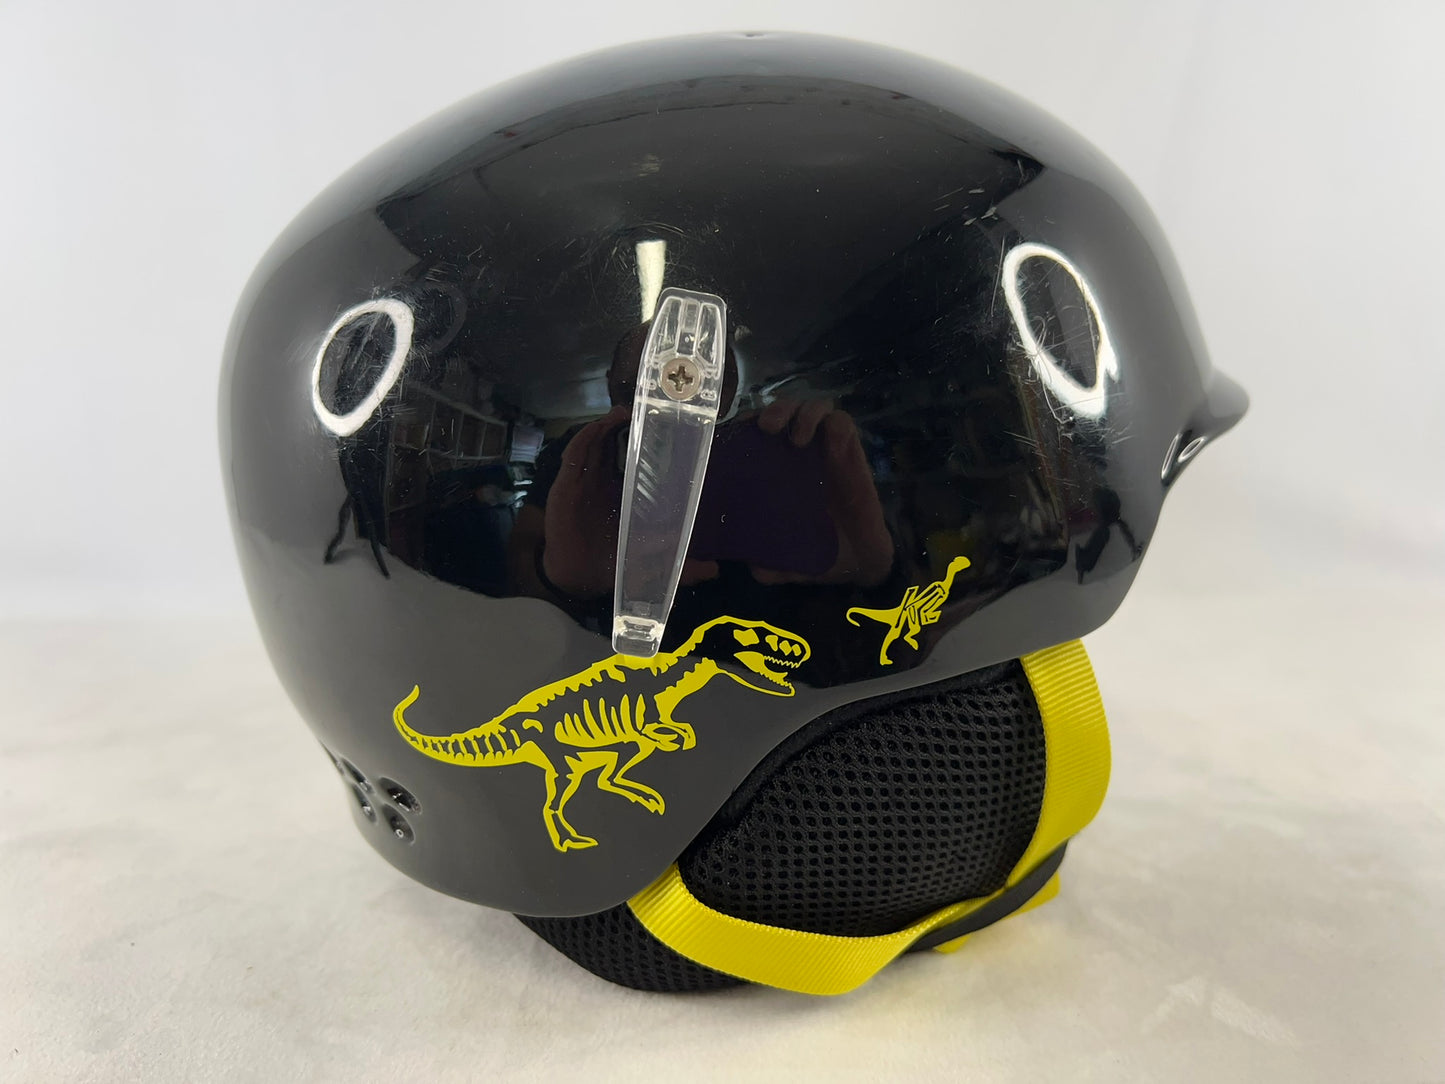 Ski Helmet Child Size 4-7 K-2 Black Lime Dinosaur As New Excellent